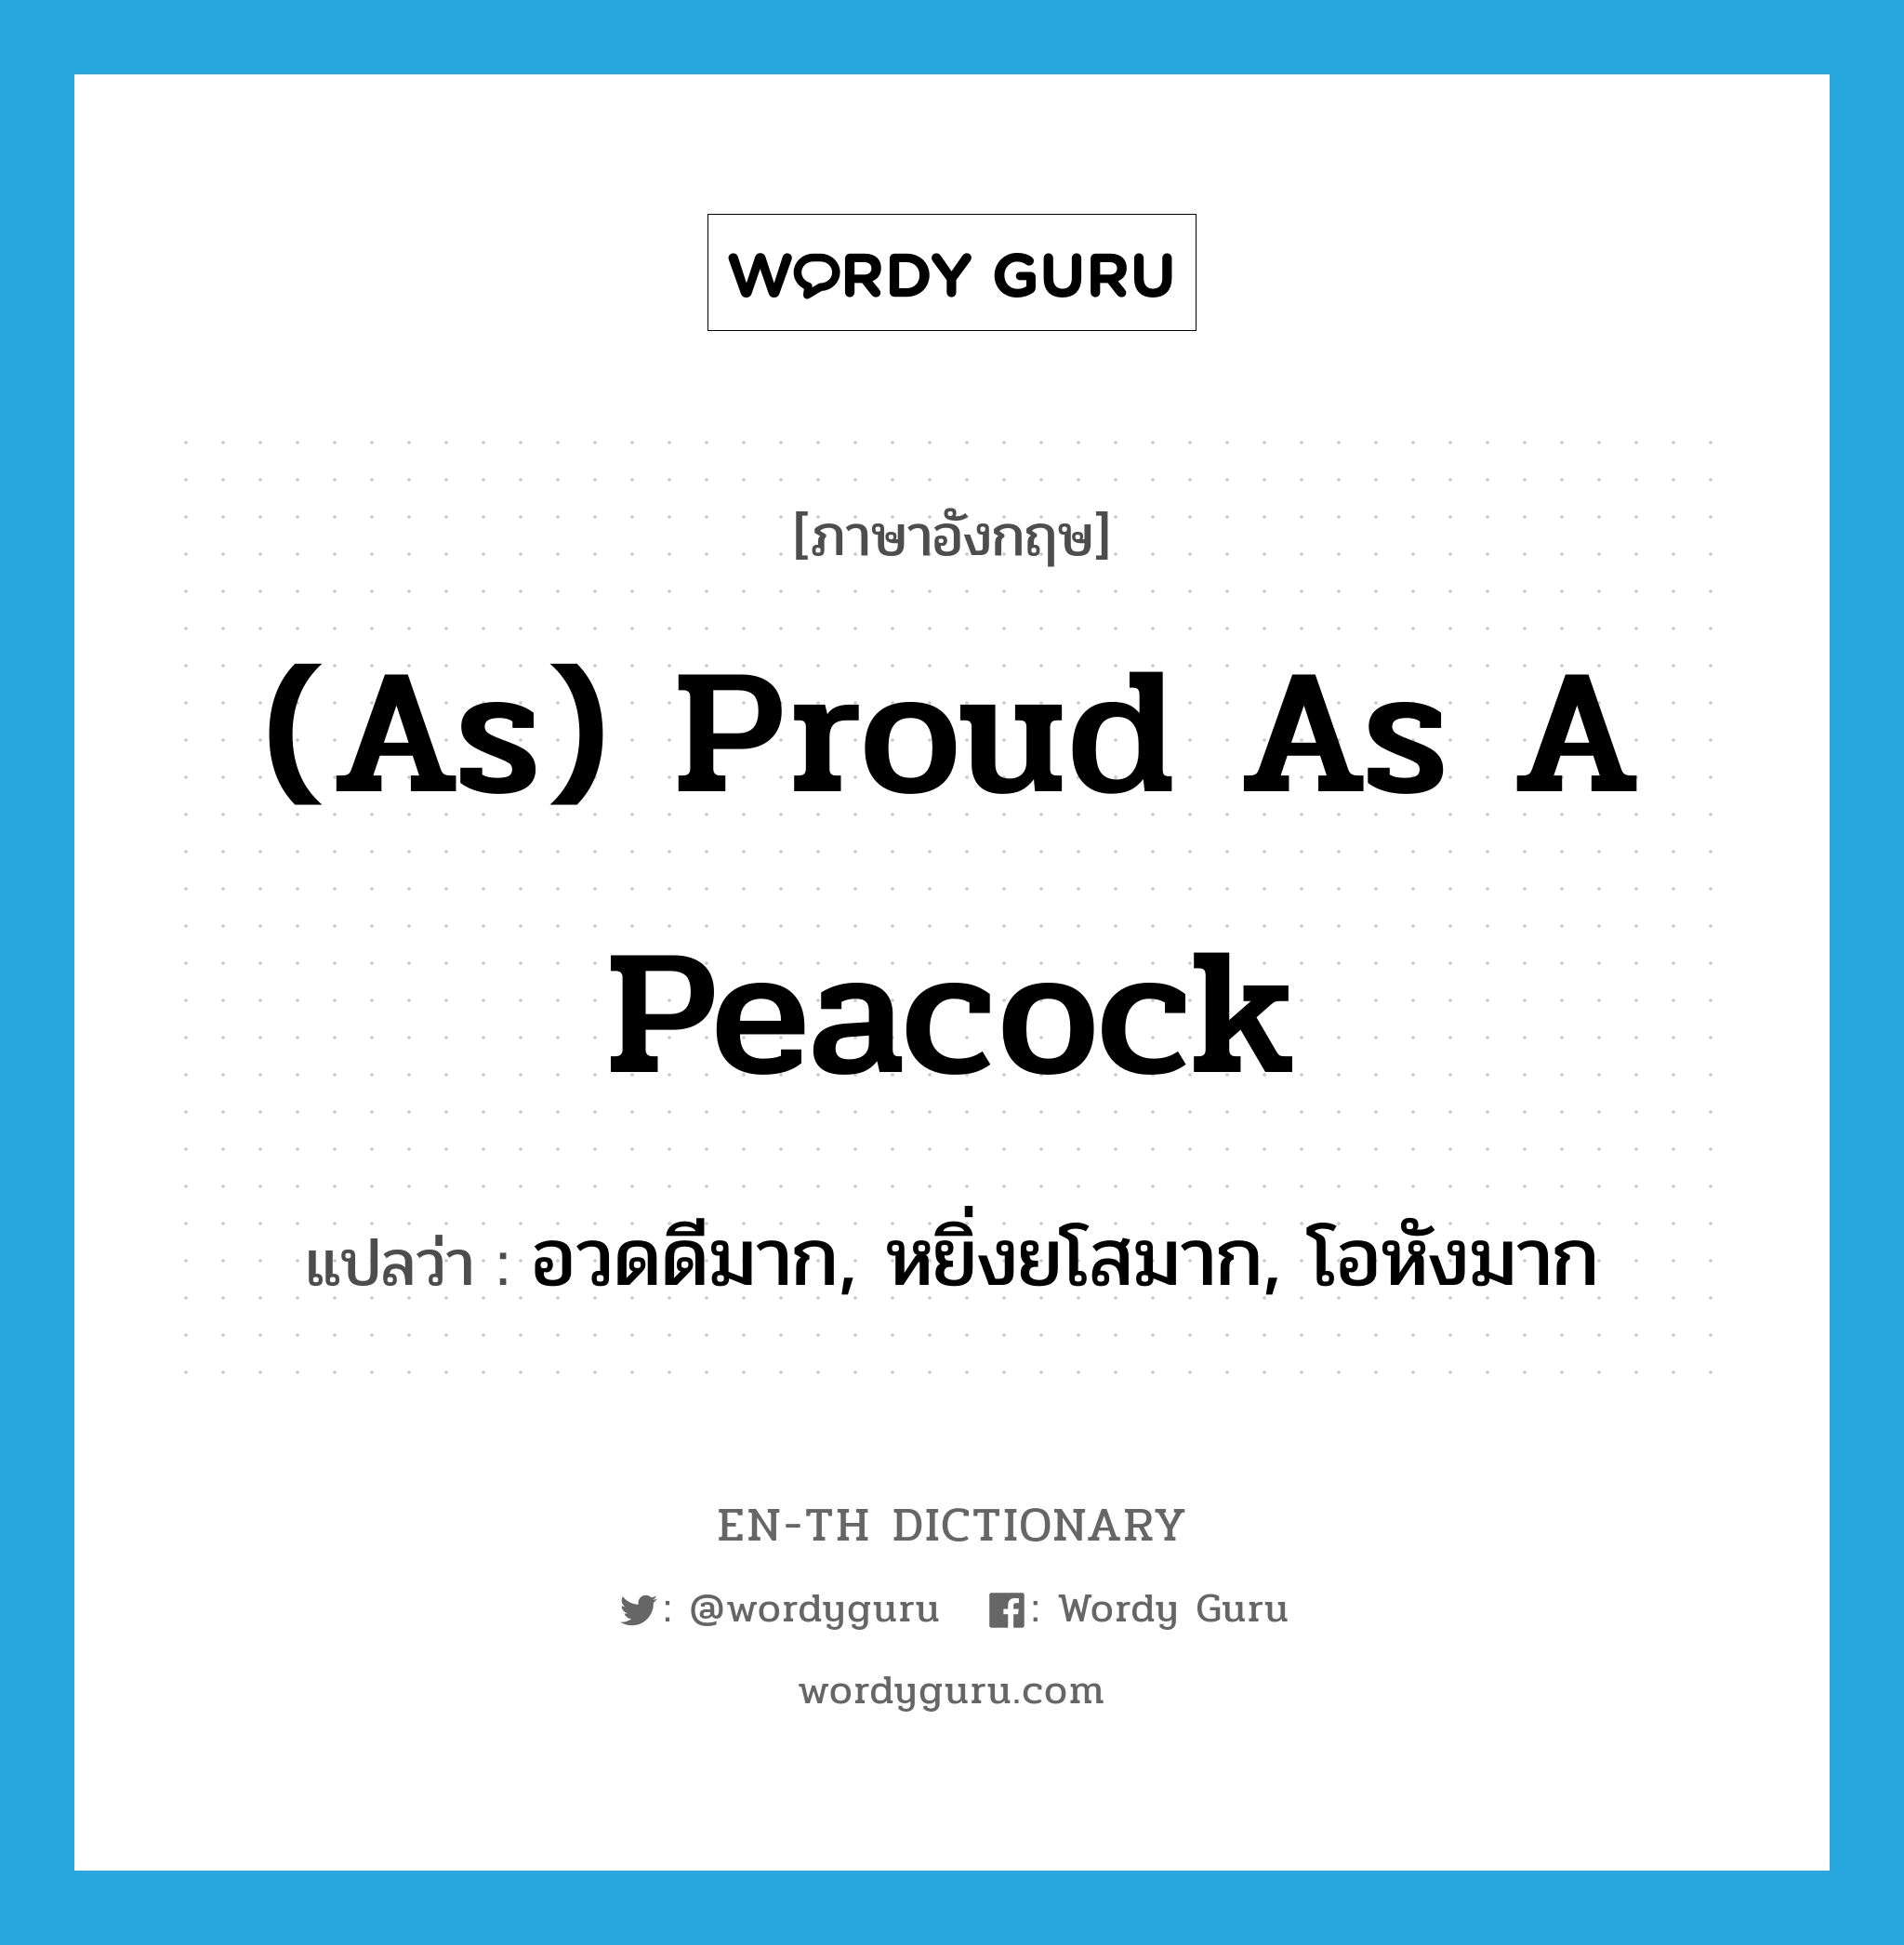 อวดดีมาก, หยิ่งยโสมาก, โอหังมาก ภาษาอังกฤษ?, คำศัพท์ภาษาอังกฤษ อวดดีมาก, หยิ่งยโสมาก, โอหังมาก แปลว่า (as) proud as a peacock ประเภท IDM หมวด IDM